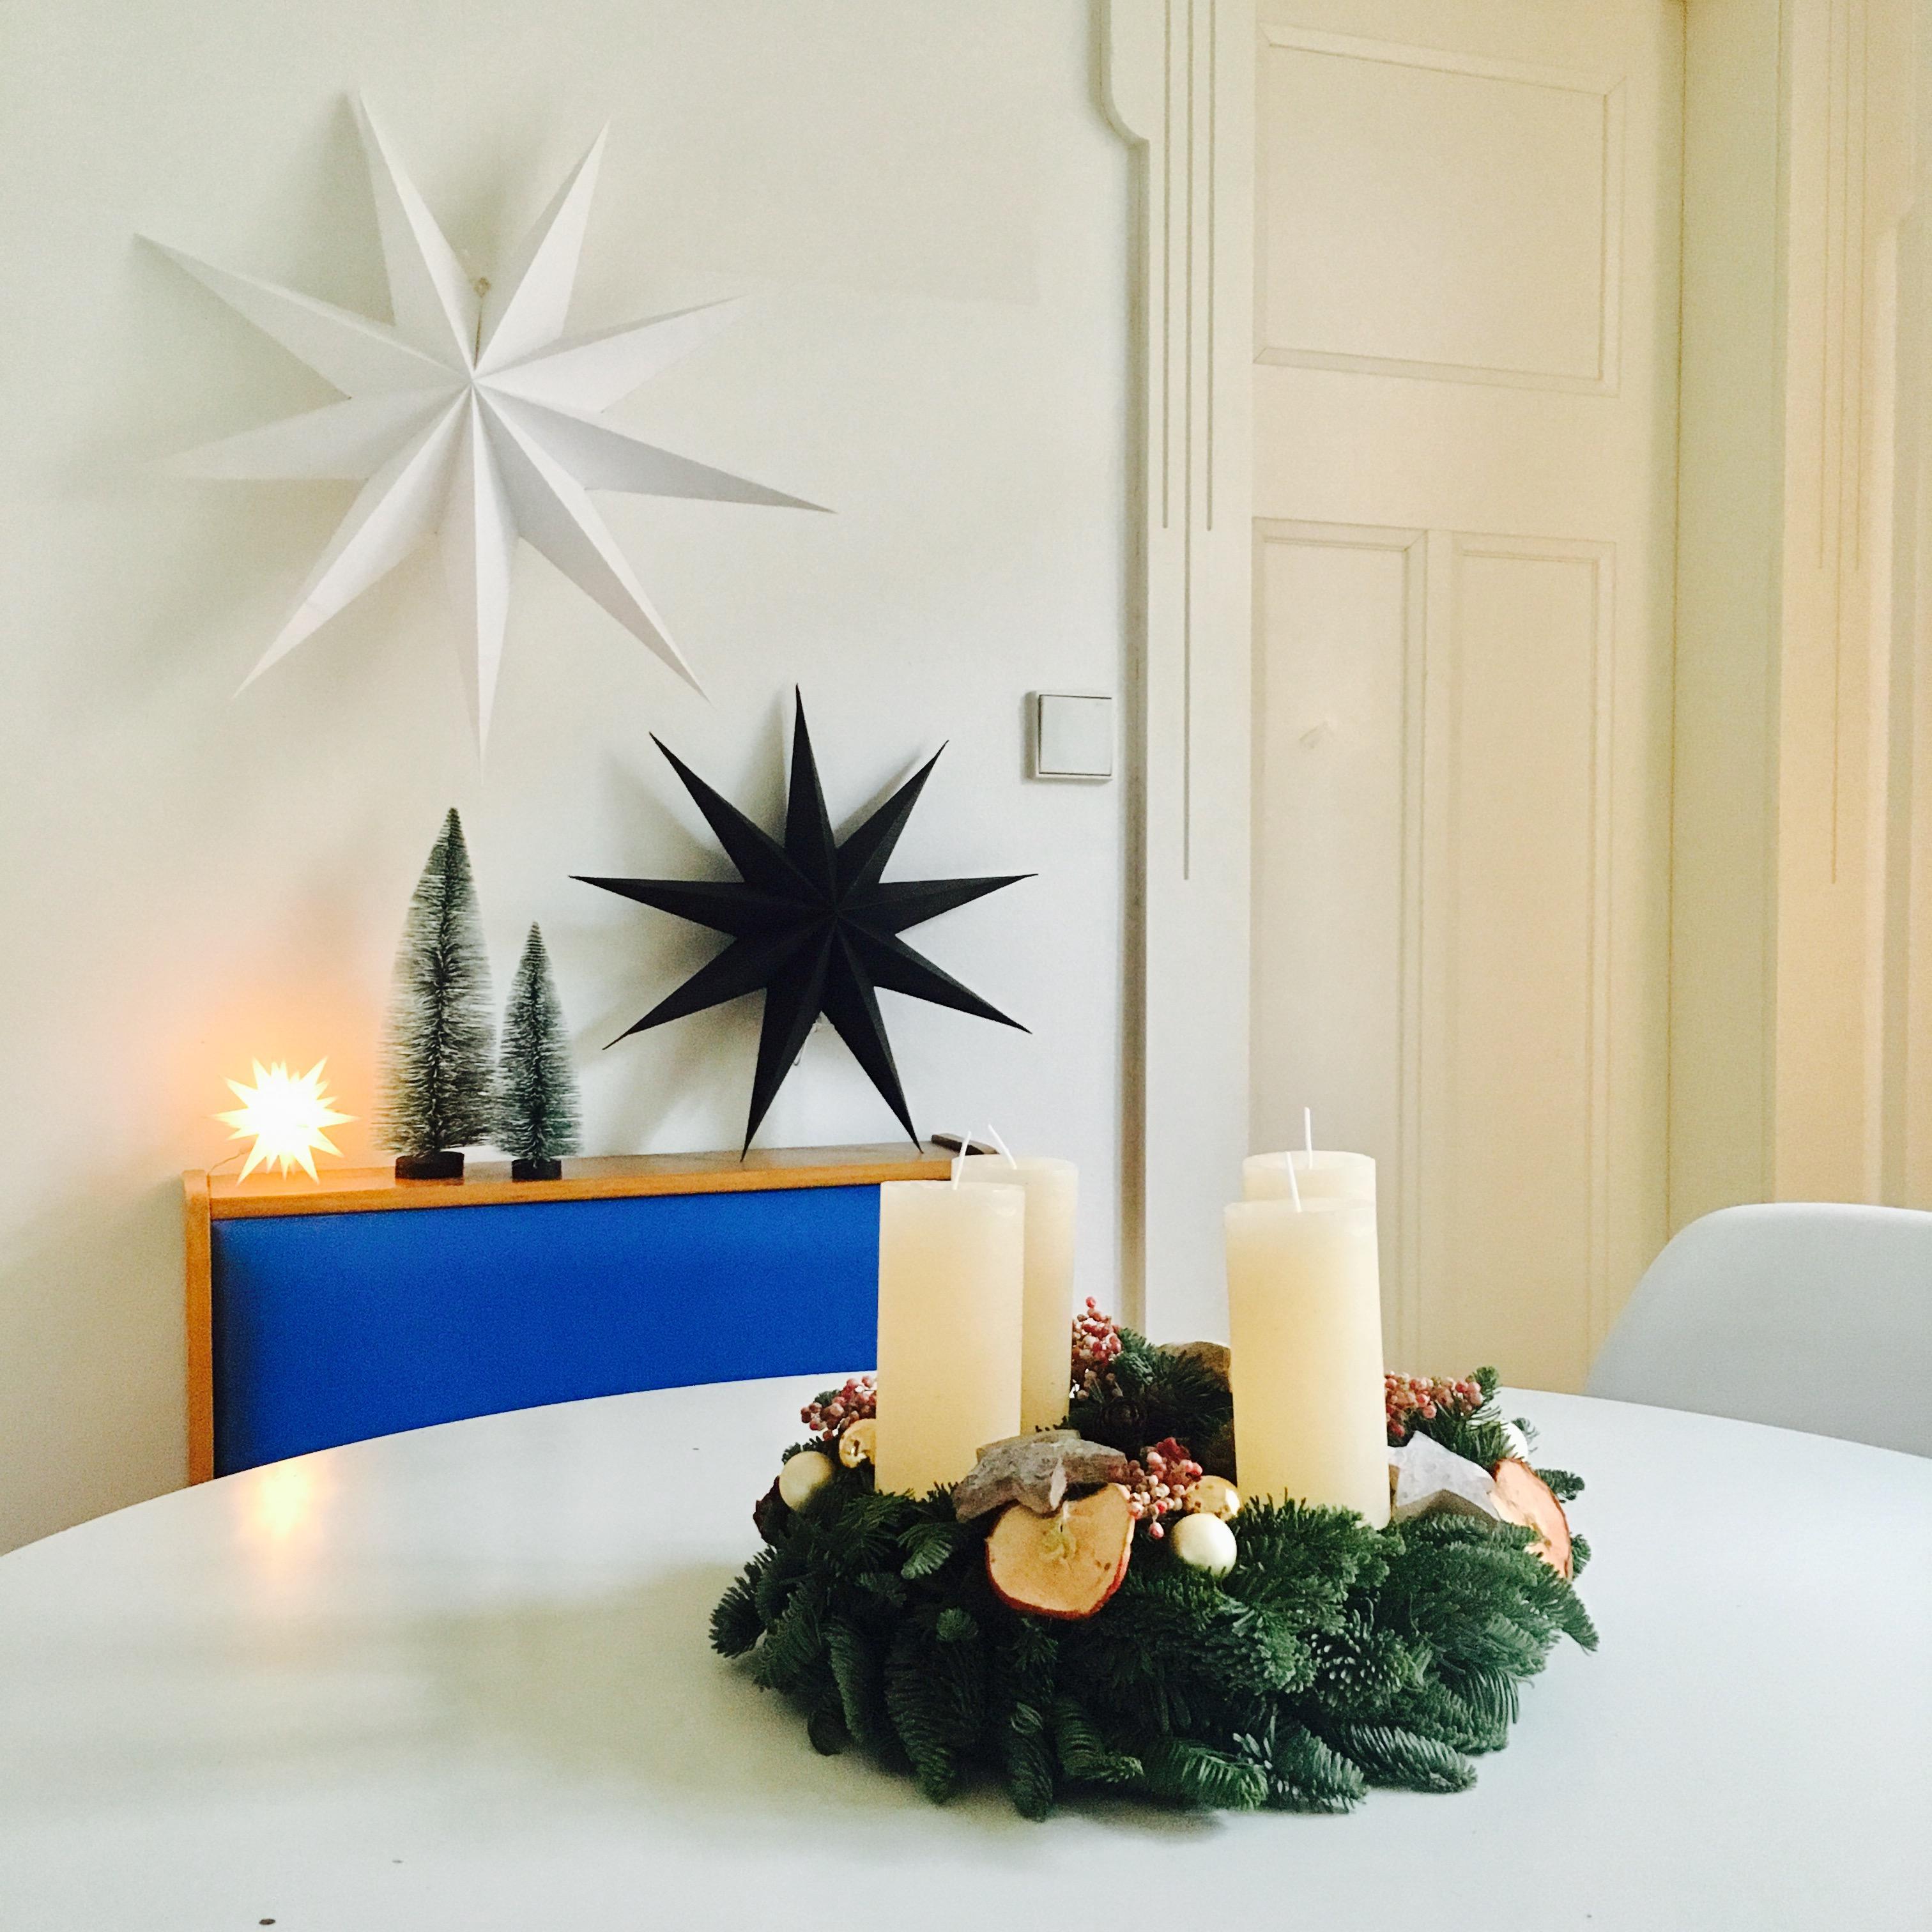 KitchenStars...
#minimalismus #adventskranz #papiersterne #leuchtstern #bäumchen #vintage #sitzbank